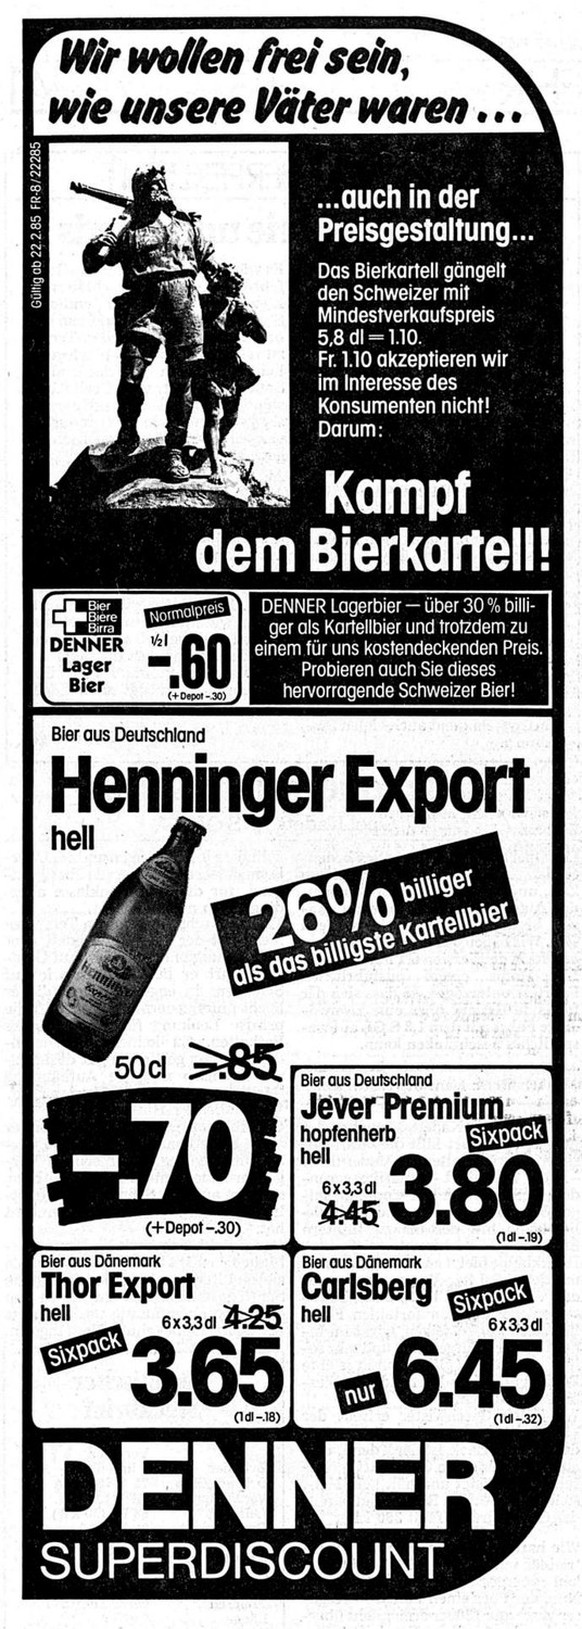 Inserat zur Bekämpfung des Bierkartells im Bieler Tagblatt vom 22. Februar, 1985.
https://www.e-newspaperarchives.ch/?a=d&amp;d=BTB19850222-01.2.54.1&amp;srpos=3&amp;e=20-02-1985-25-02-1985-198-de-20- ...